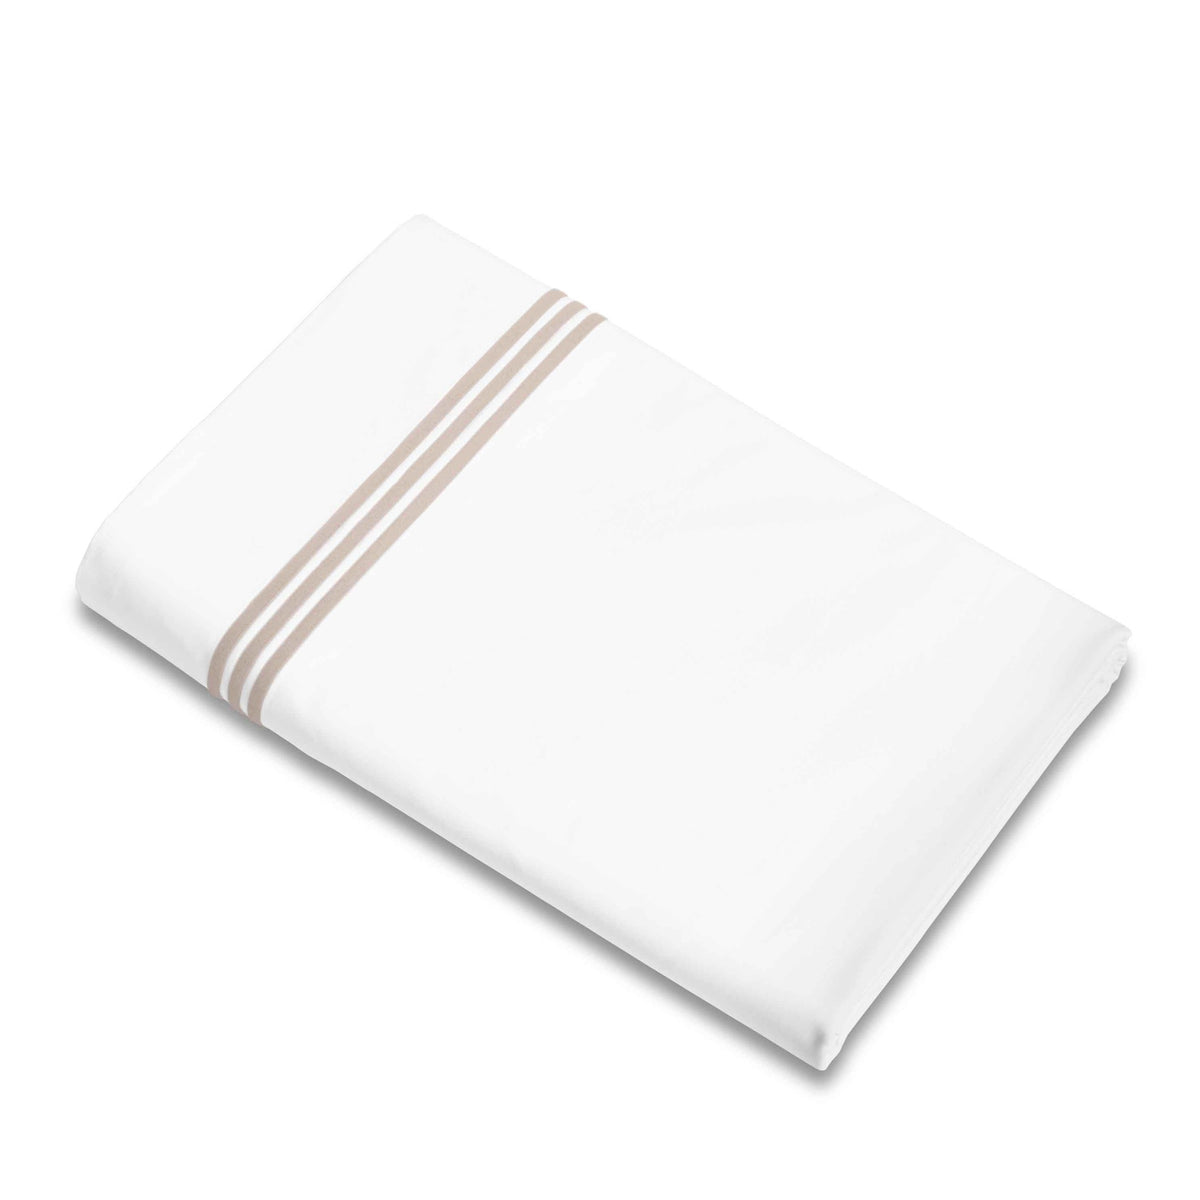 Flat Sheet of Signoria Platinum Percale Bedding in White/Antique Rose Color